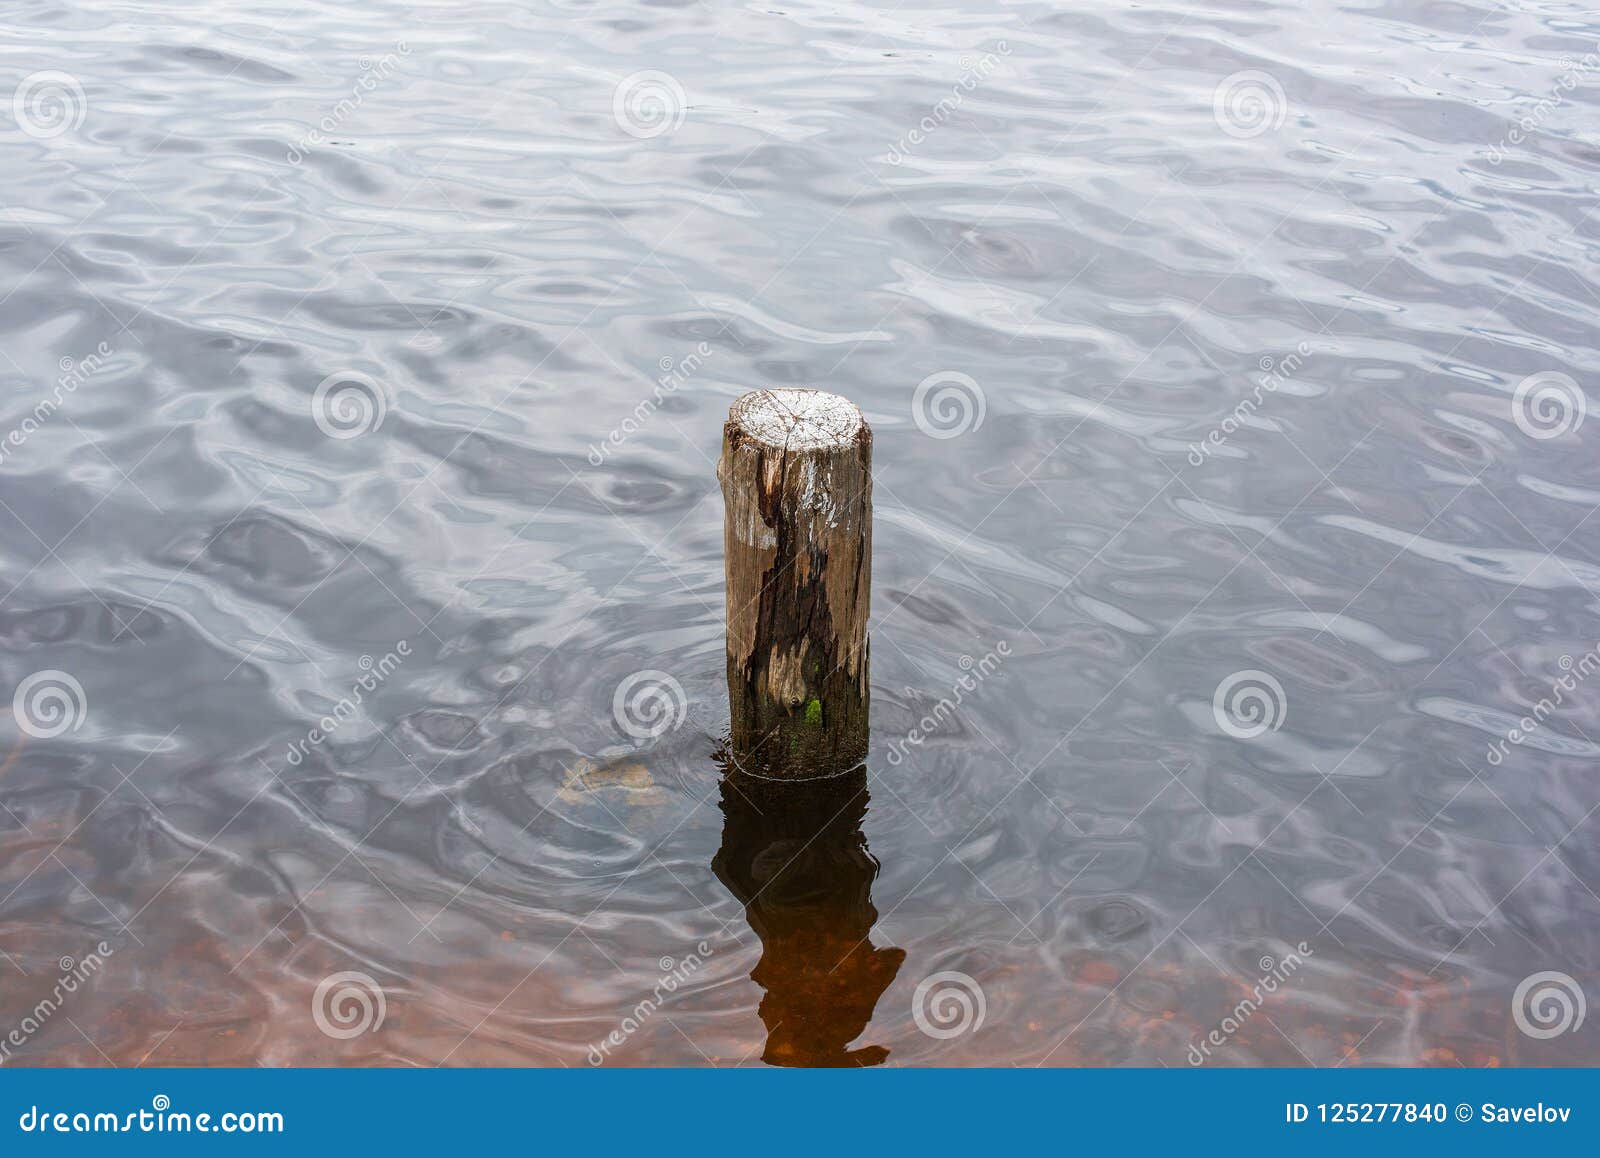 Un Pilar De Madera En El Agua Foto de archivo - Imagen de pilar, calma ...